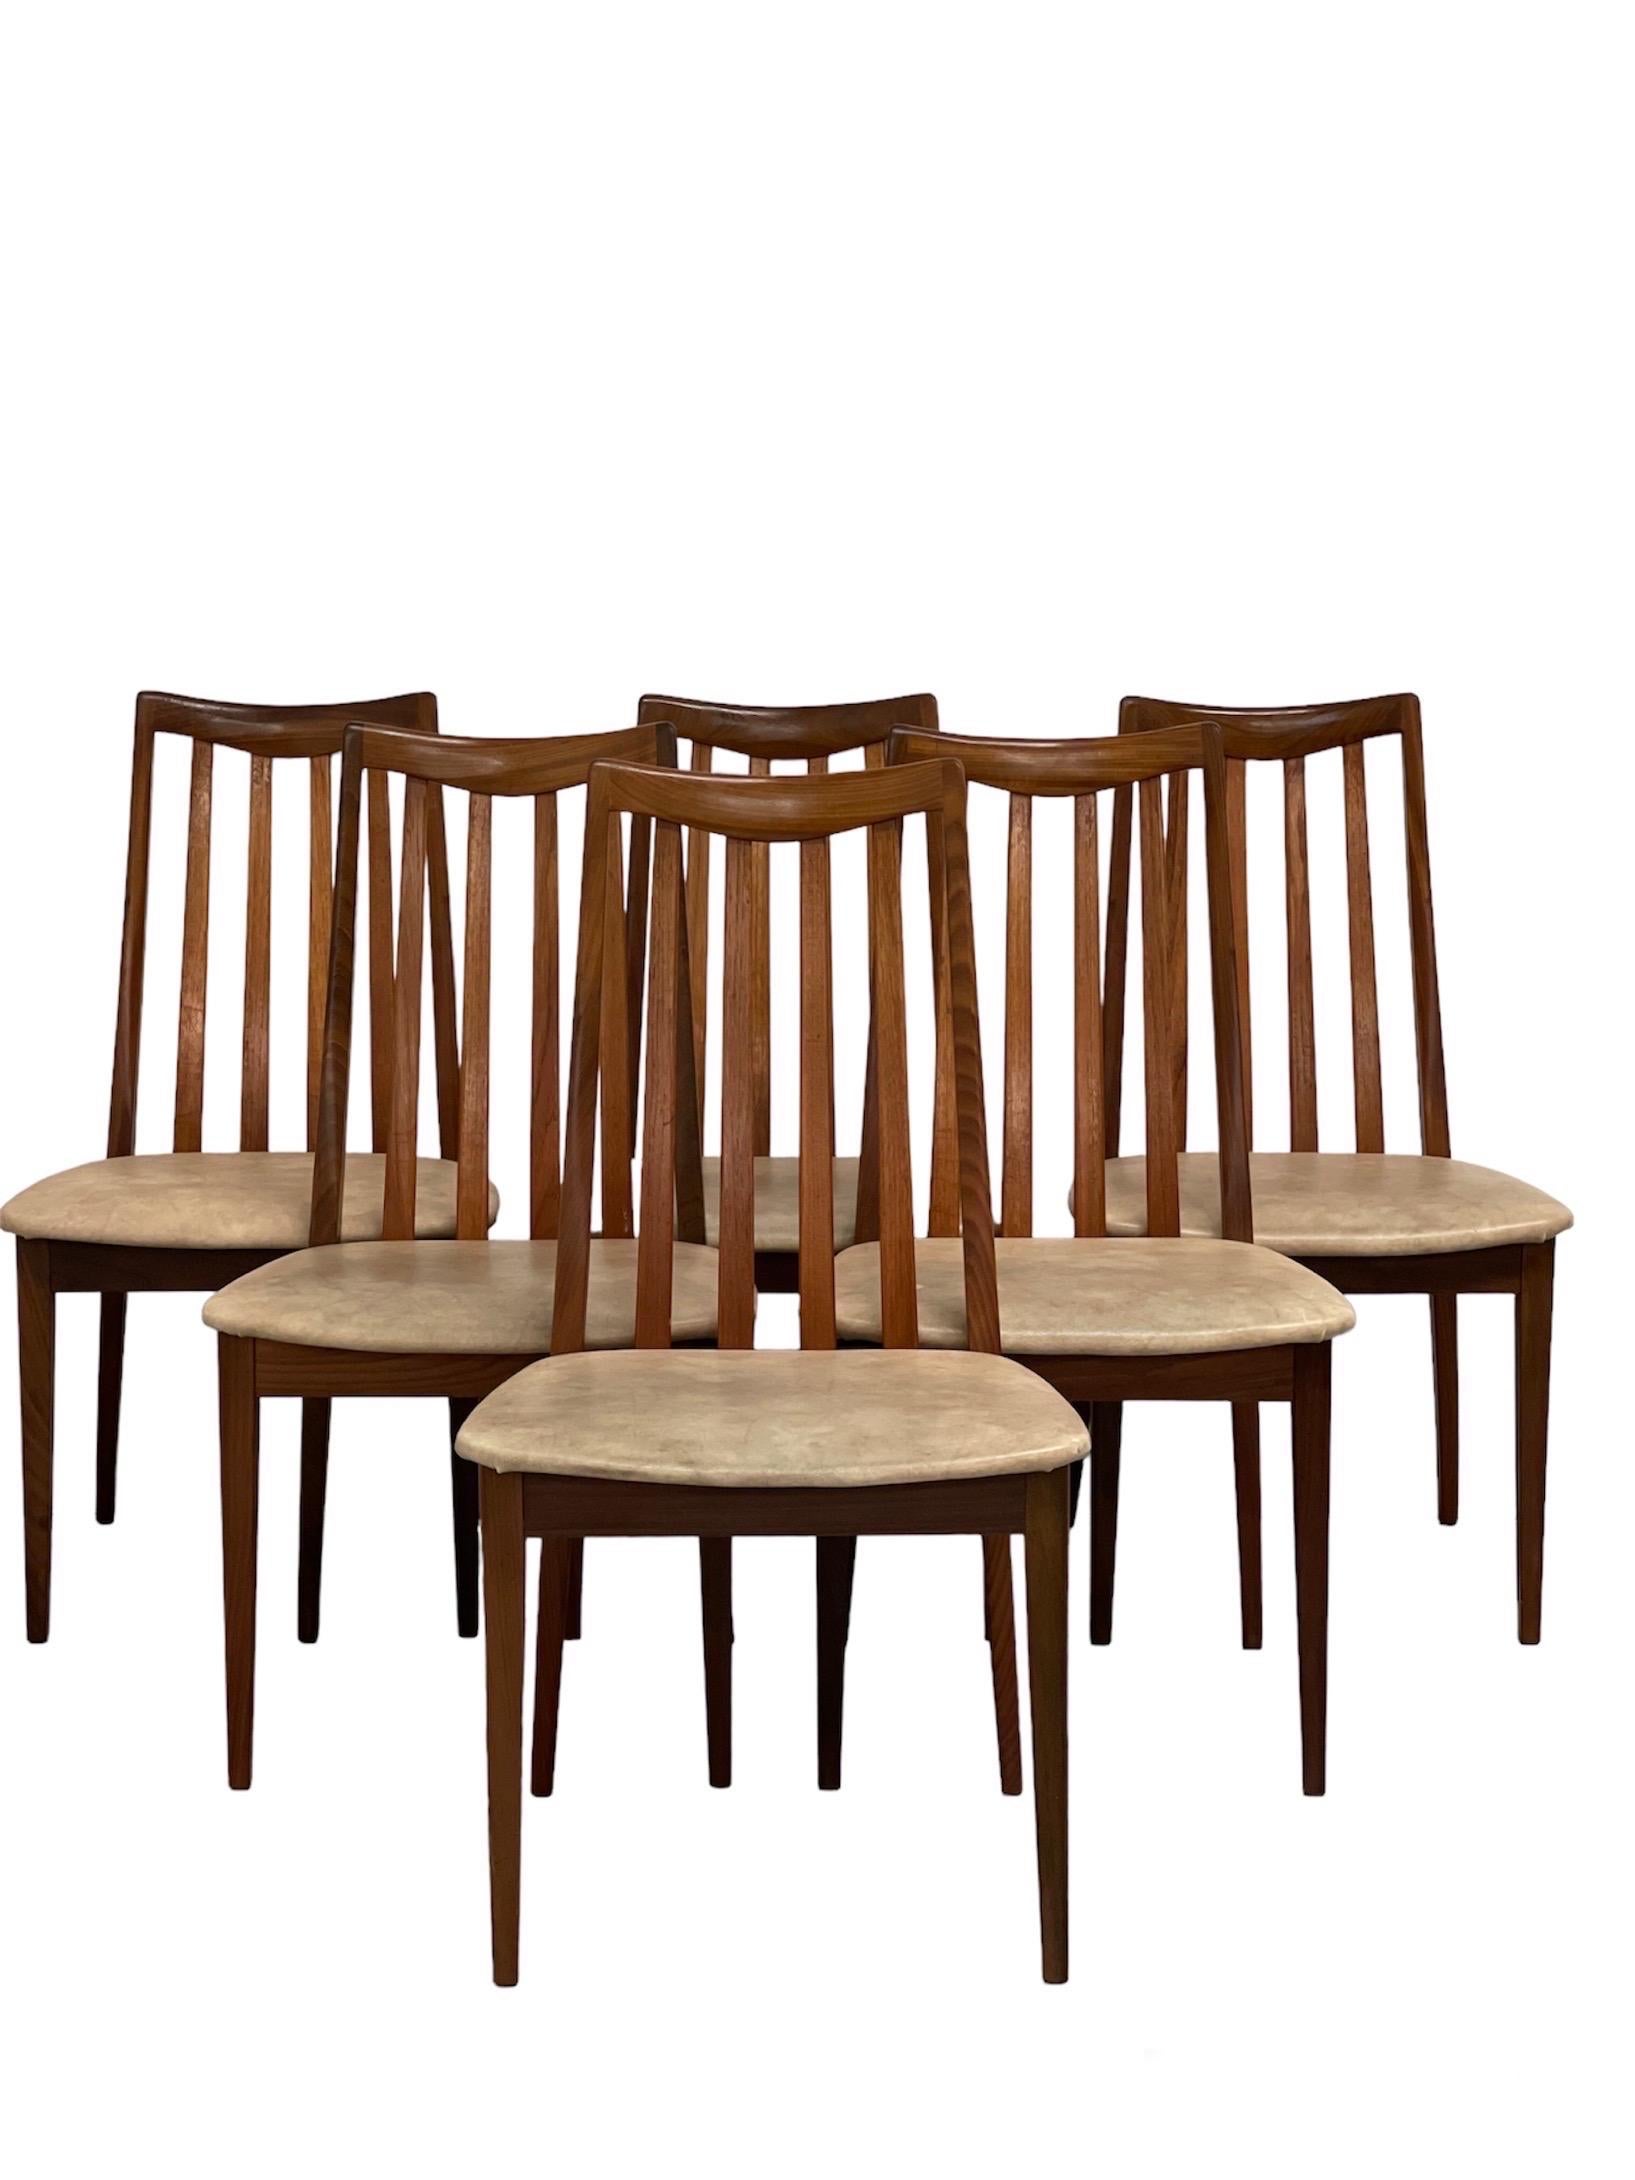 Esszimmerstühle im dänischen Stil mit Leiterlehne. Satz mit 6 Stück

Abmessungen. 19 B ; 21 T ; 36 H

Sitzhöhe 17.